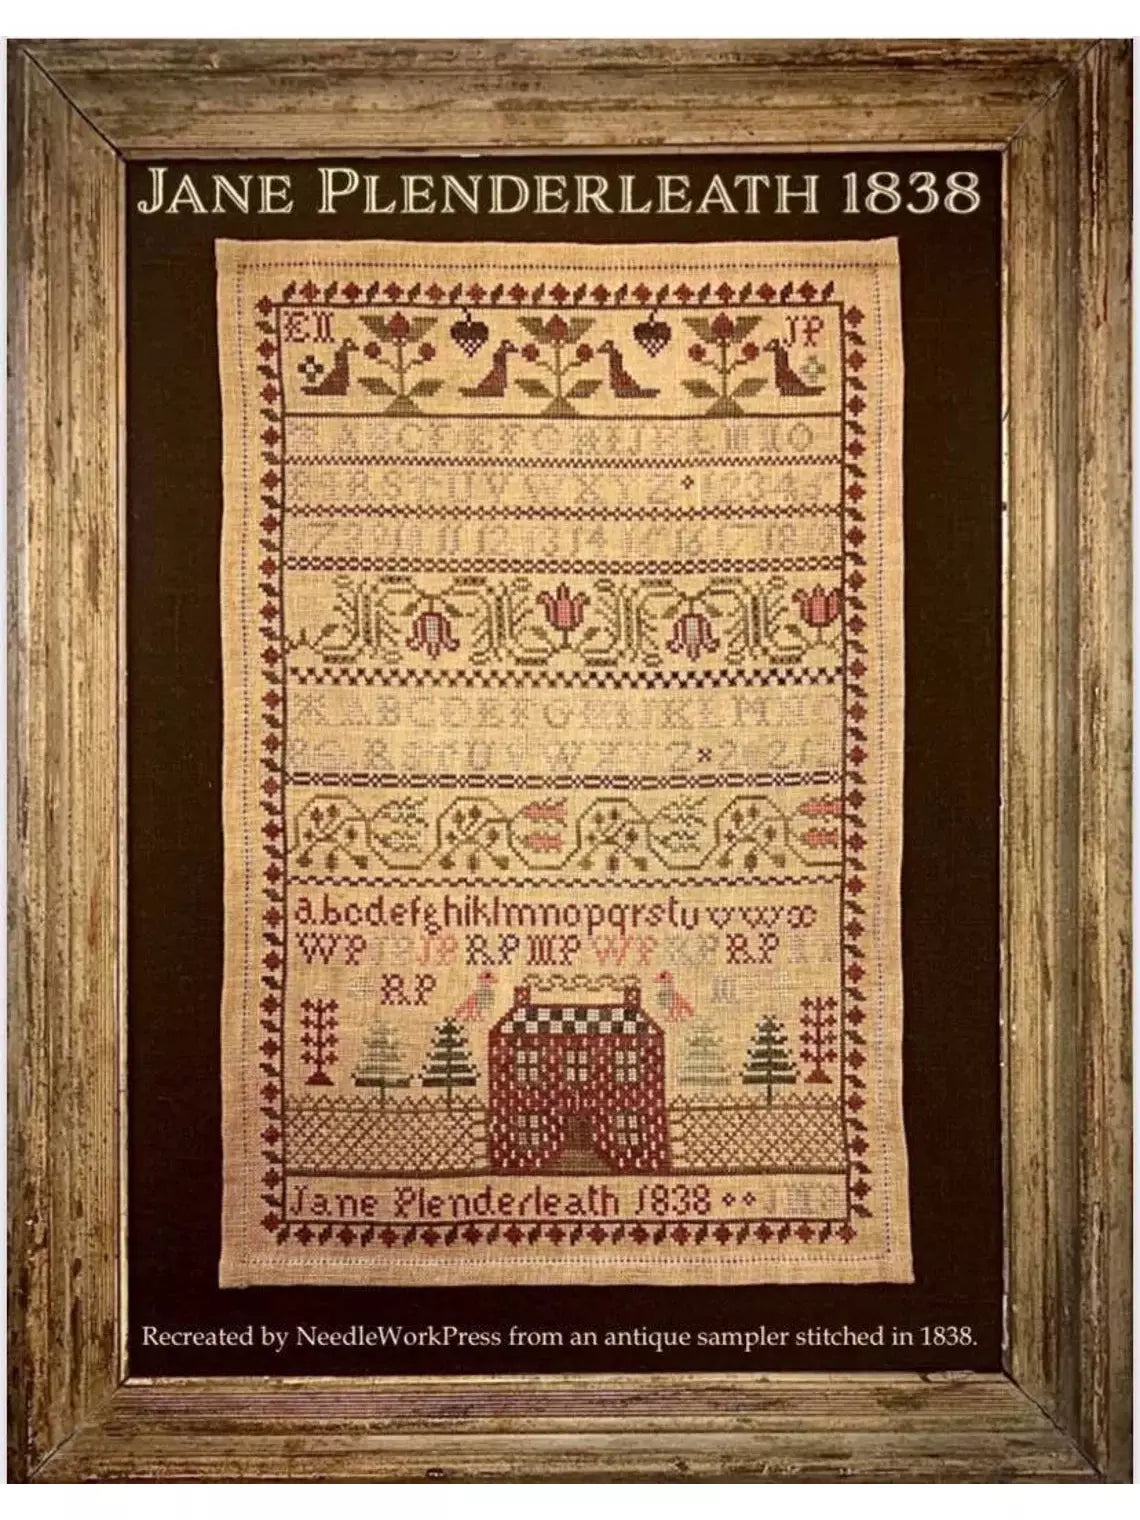 NeedleWork Press - Jane Plenderleath 1838